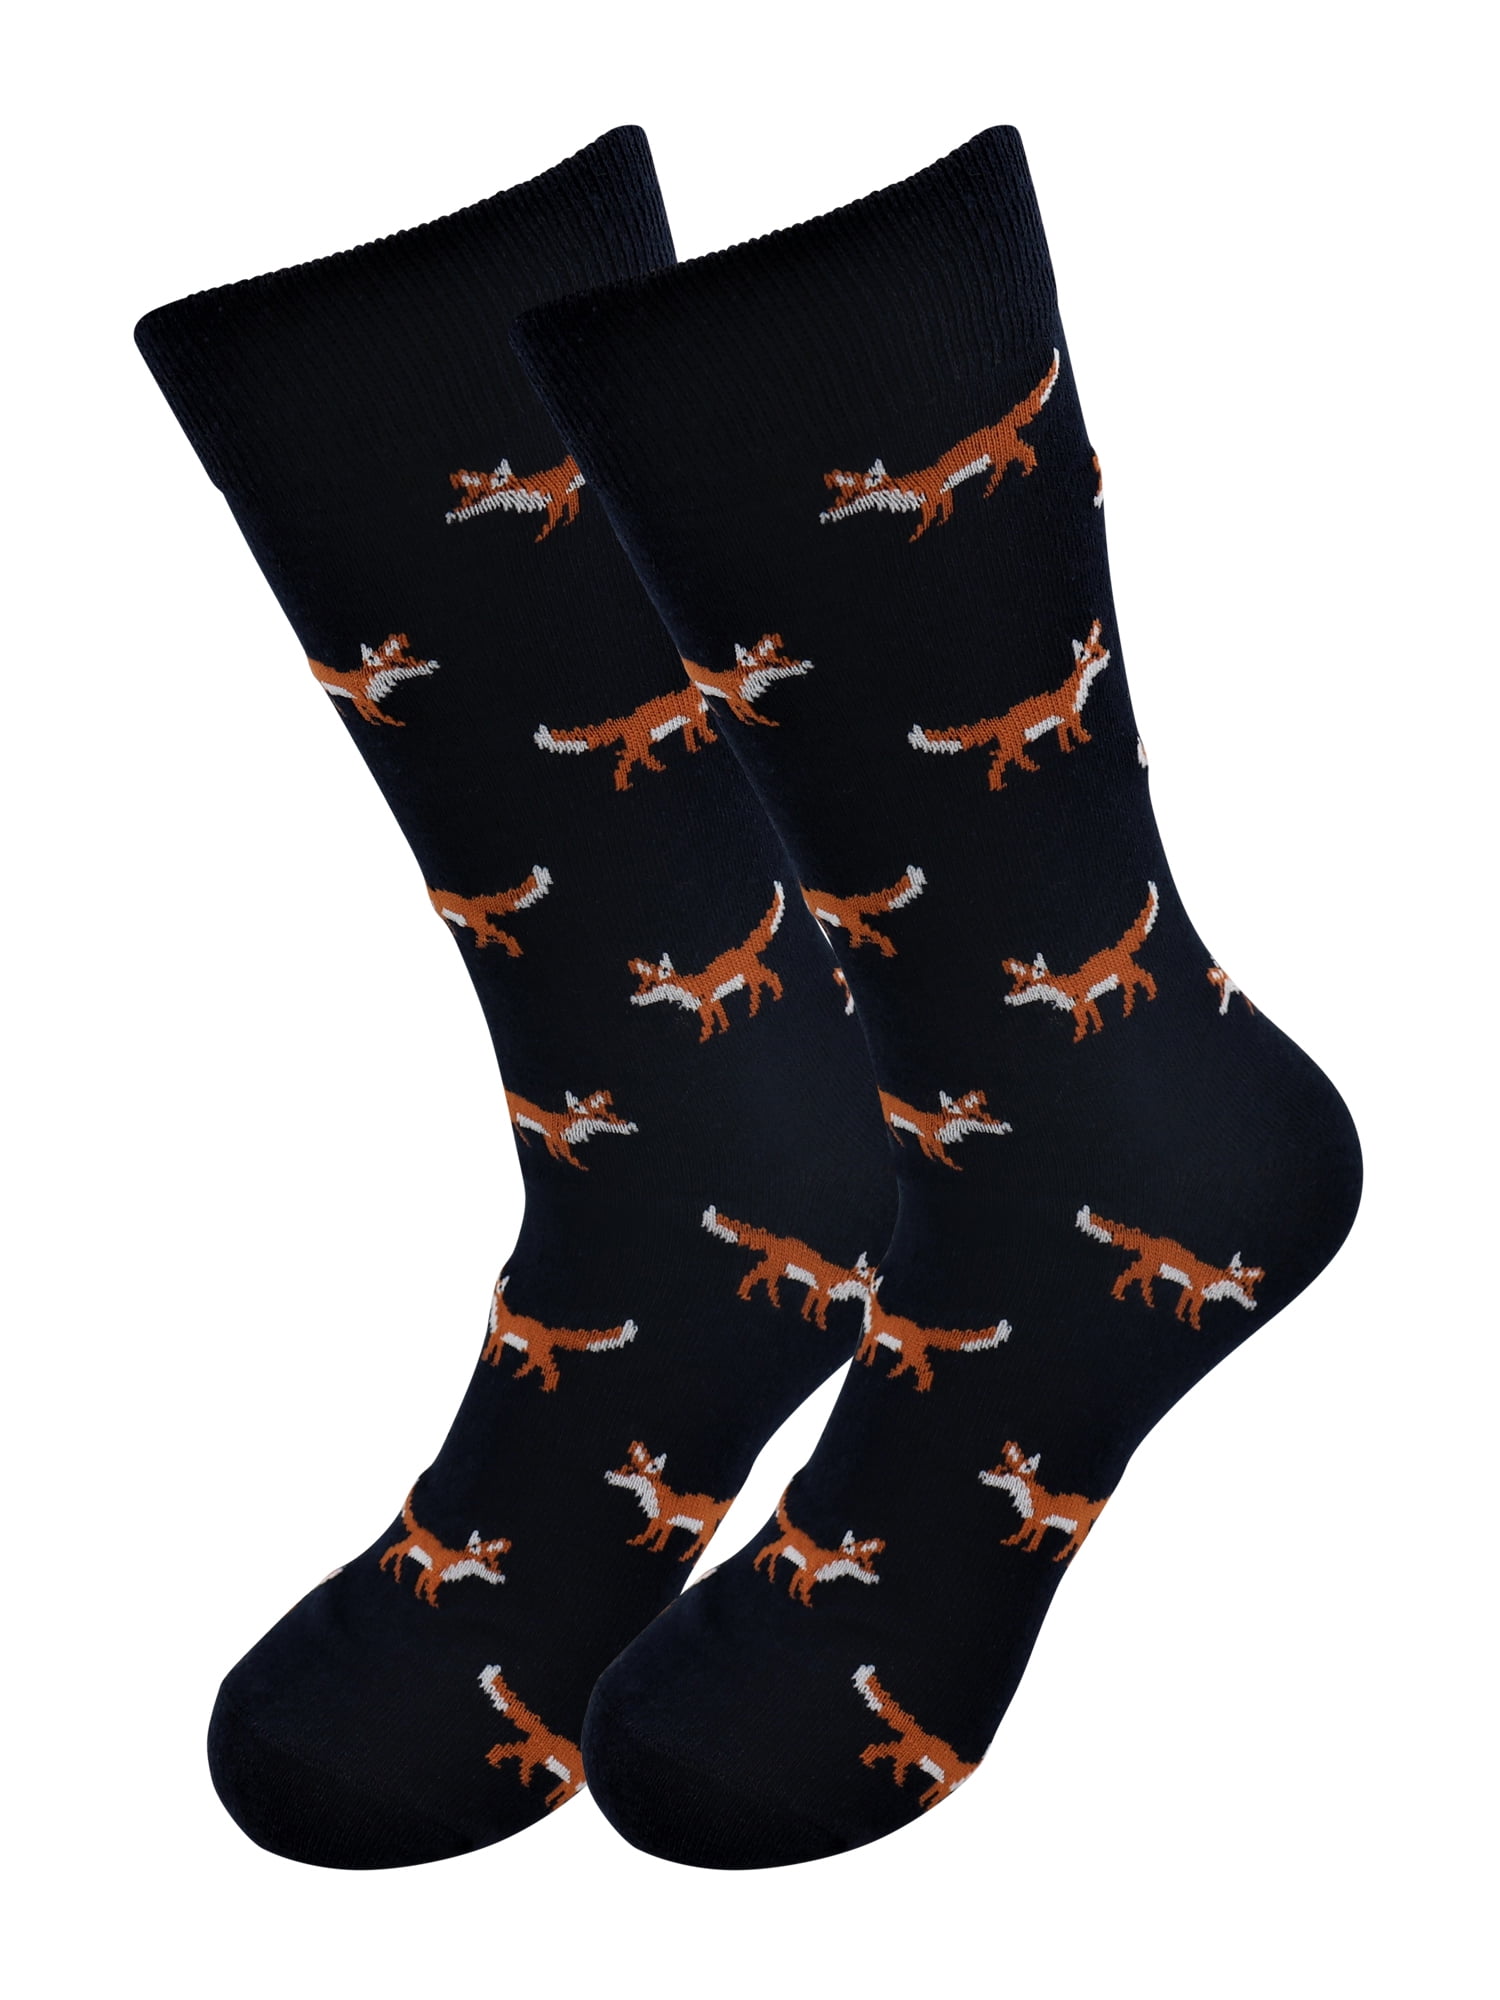 Sick Socks – Fox – Exotic Animals Casual Dress Socks - Walmart.com